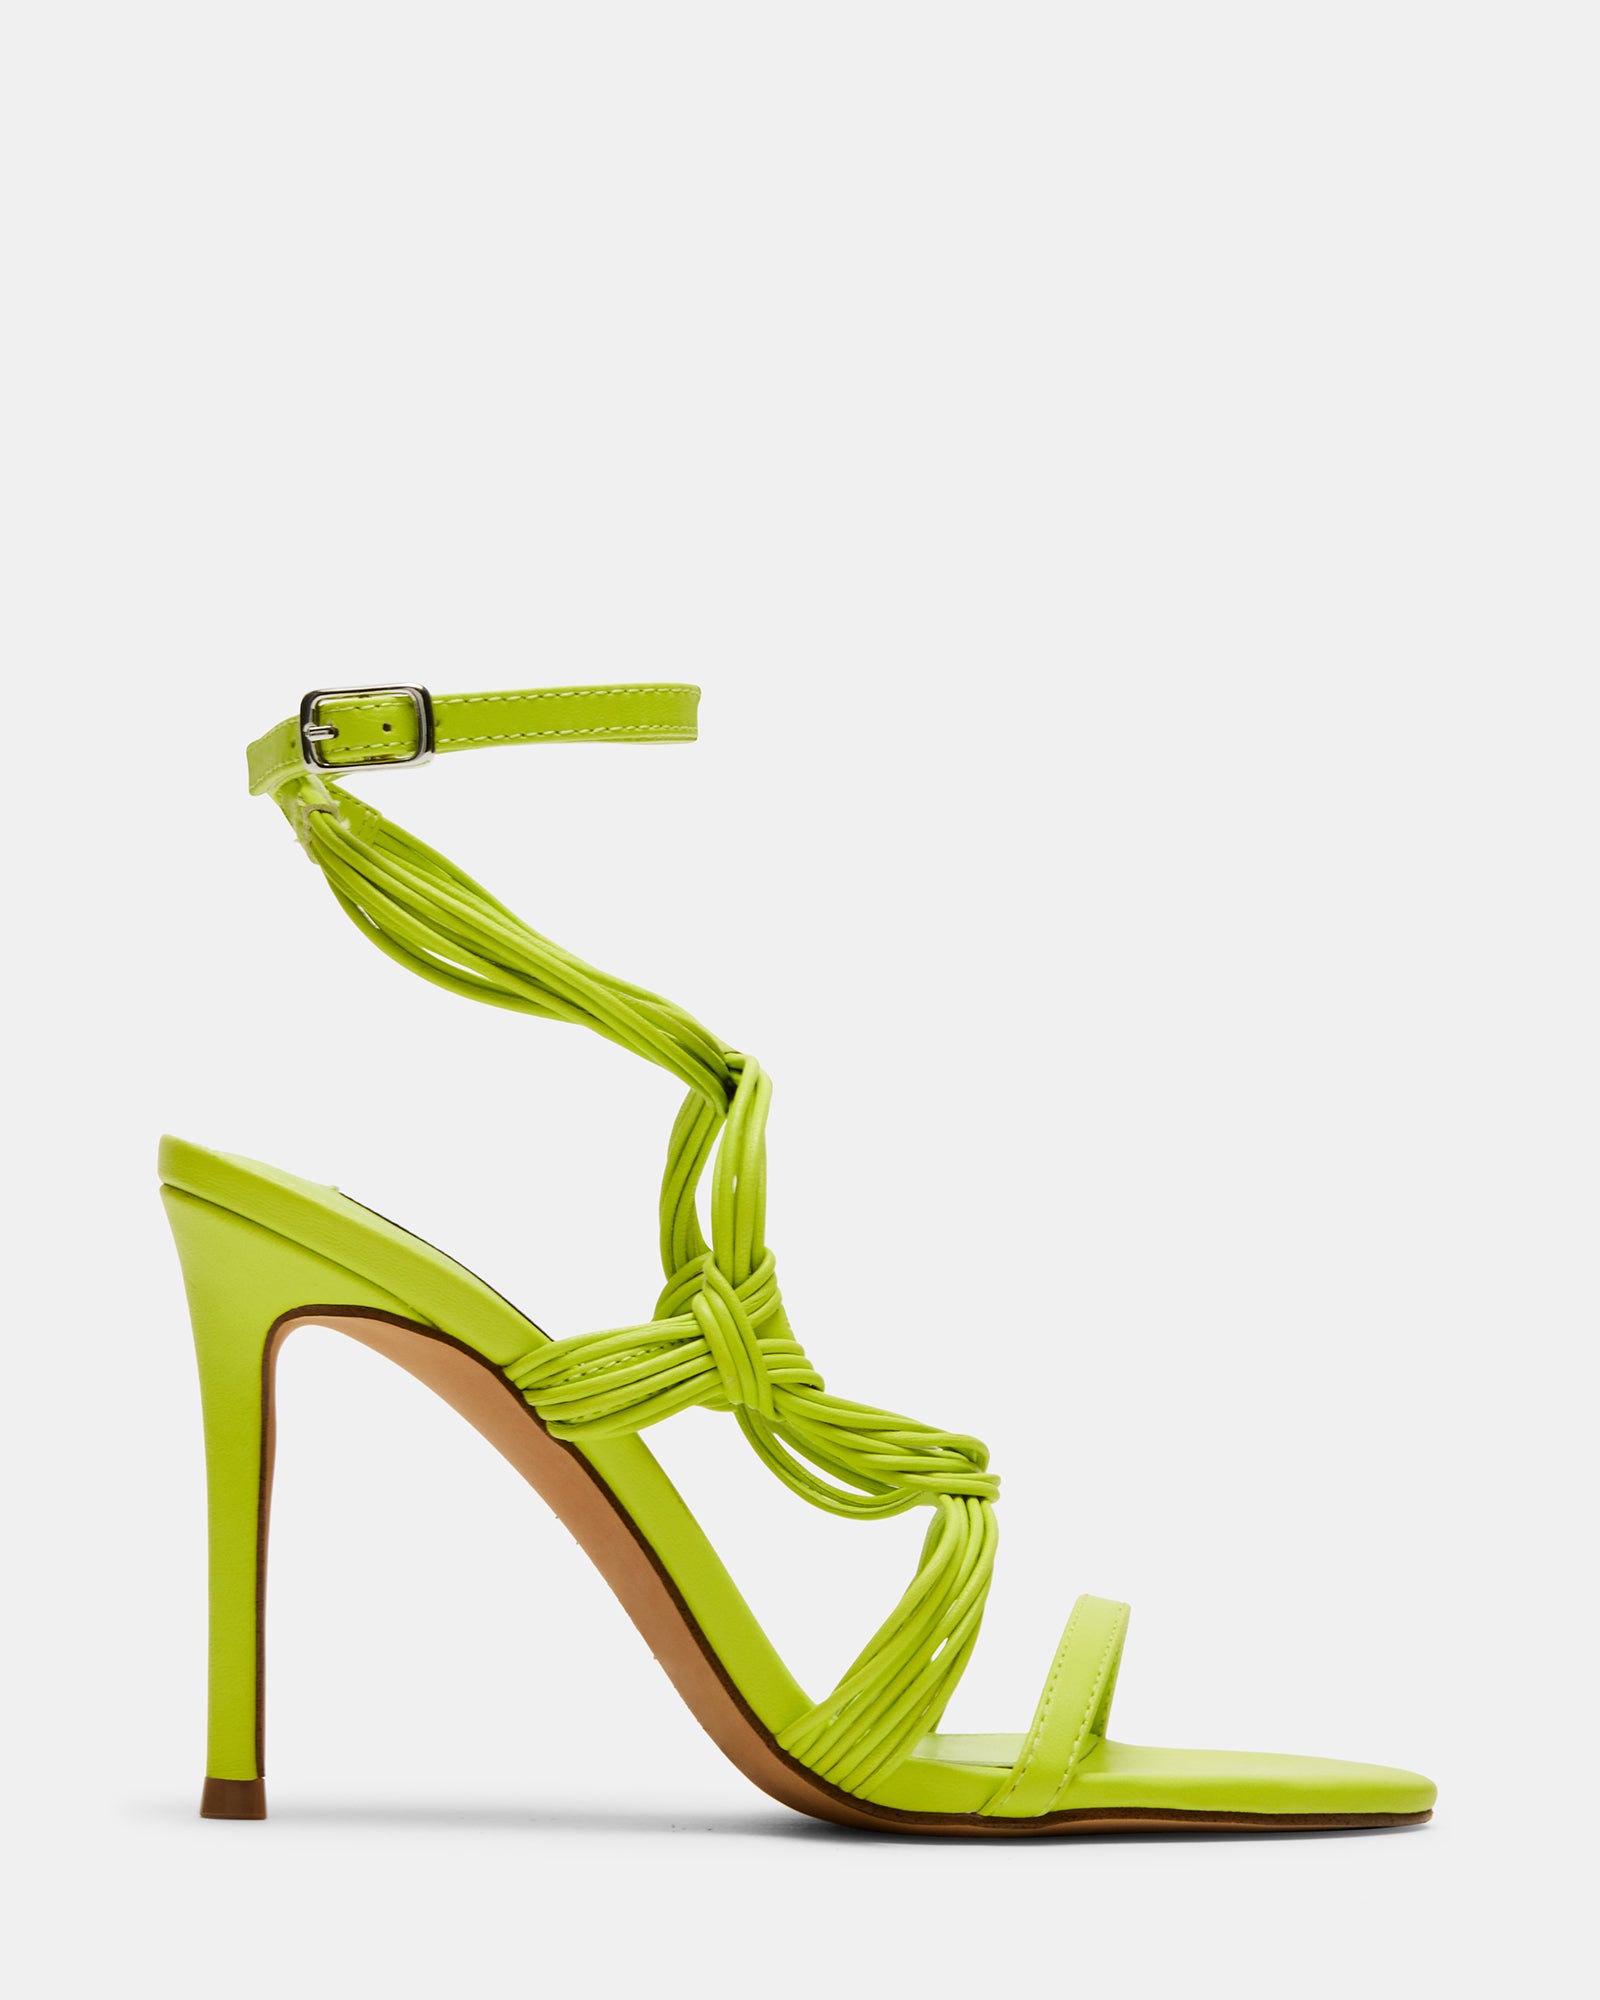 LELE Green Leather Strappy Heels | Women's Heels – Steve Madden